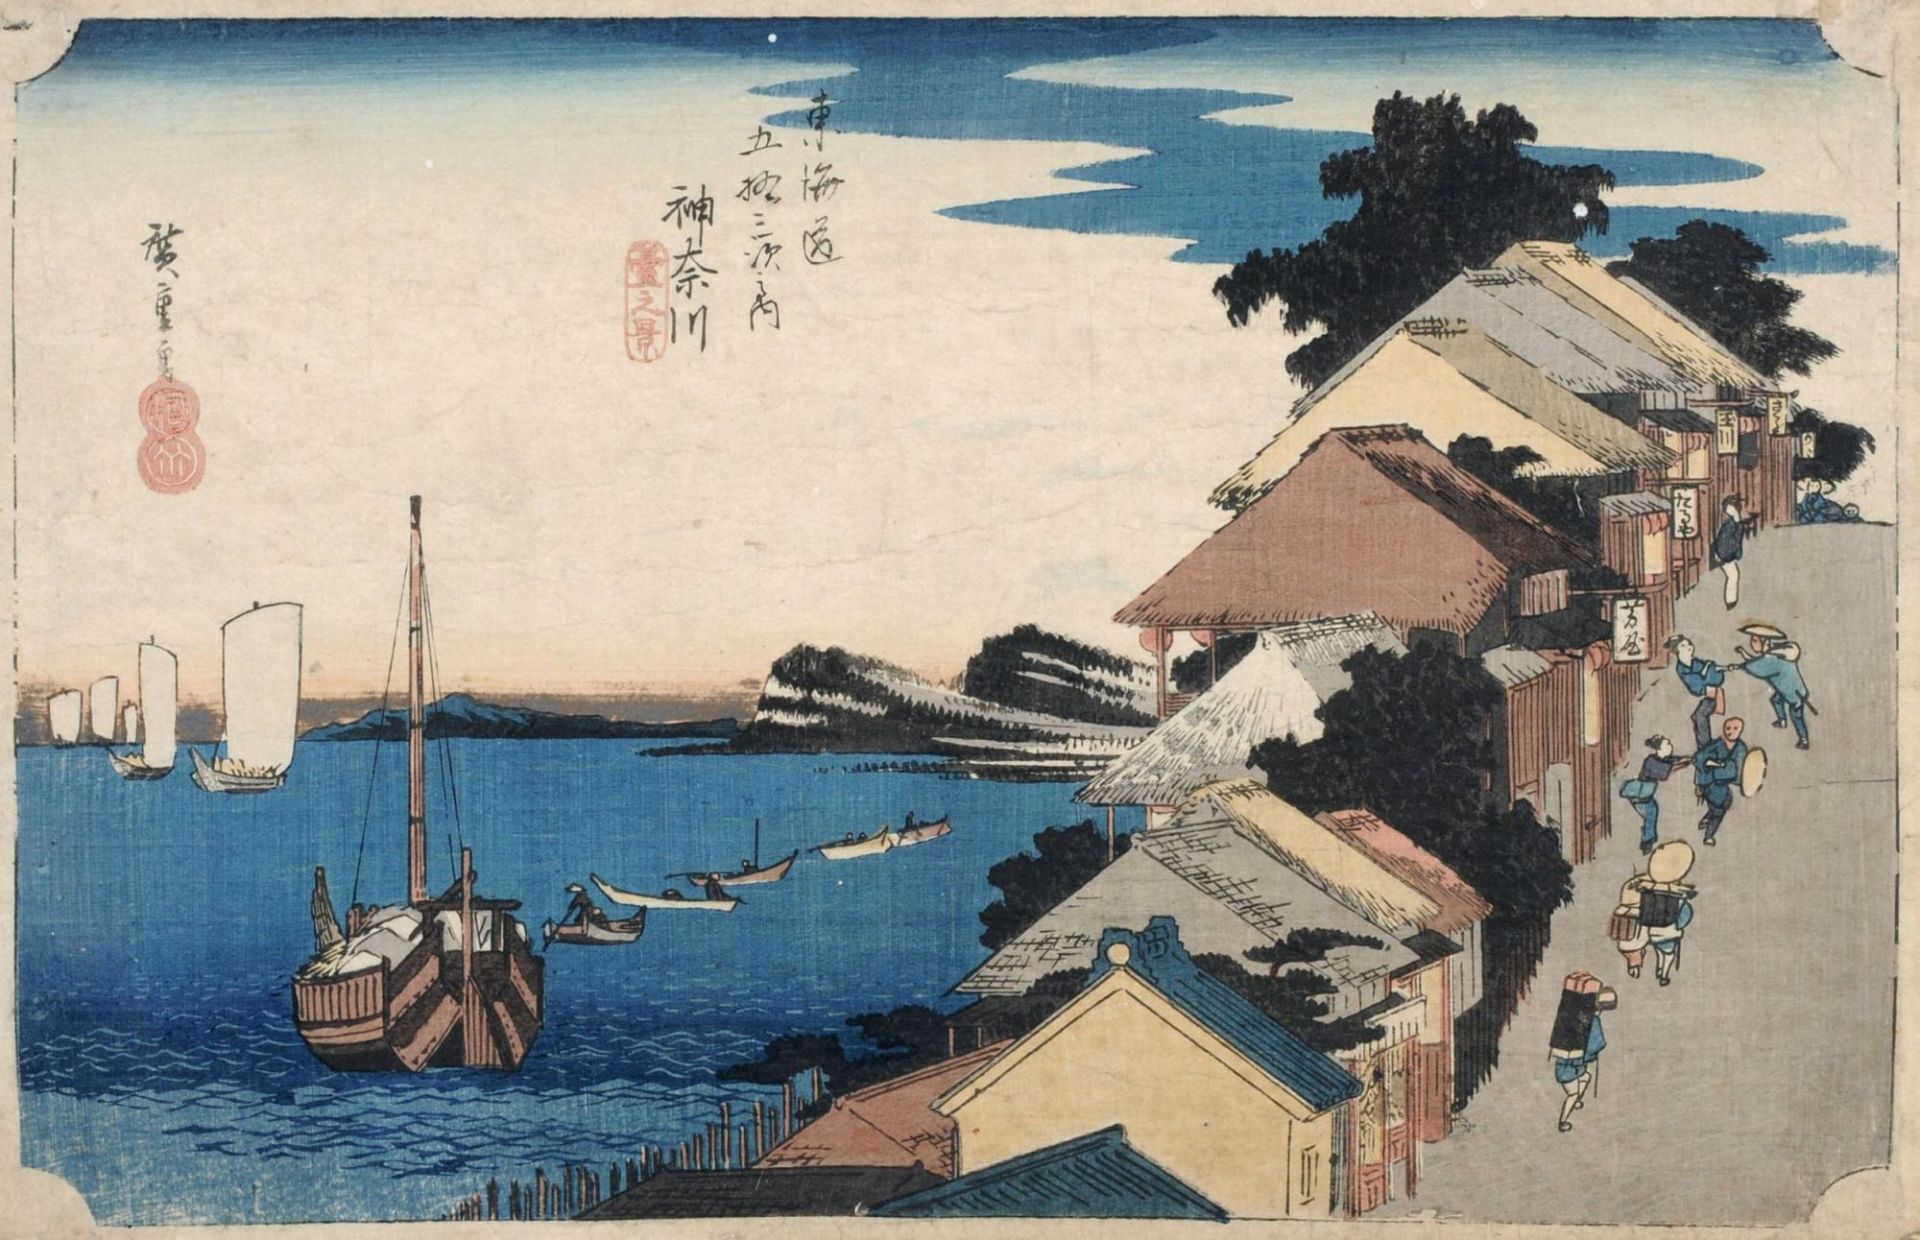 Utagawa Hiroshige, 4. Station: Kanagawa, Blick auf den Uferwall. Aus der Serie "53 Stationen der